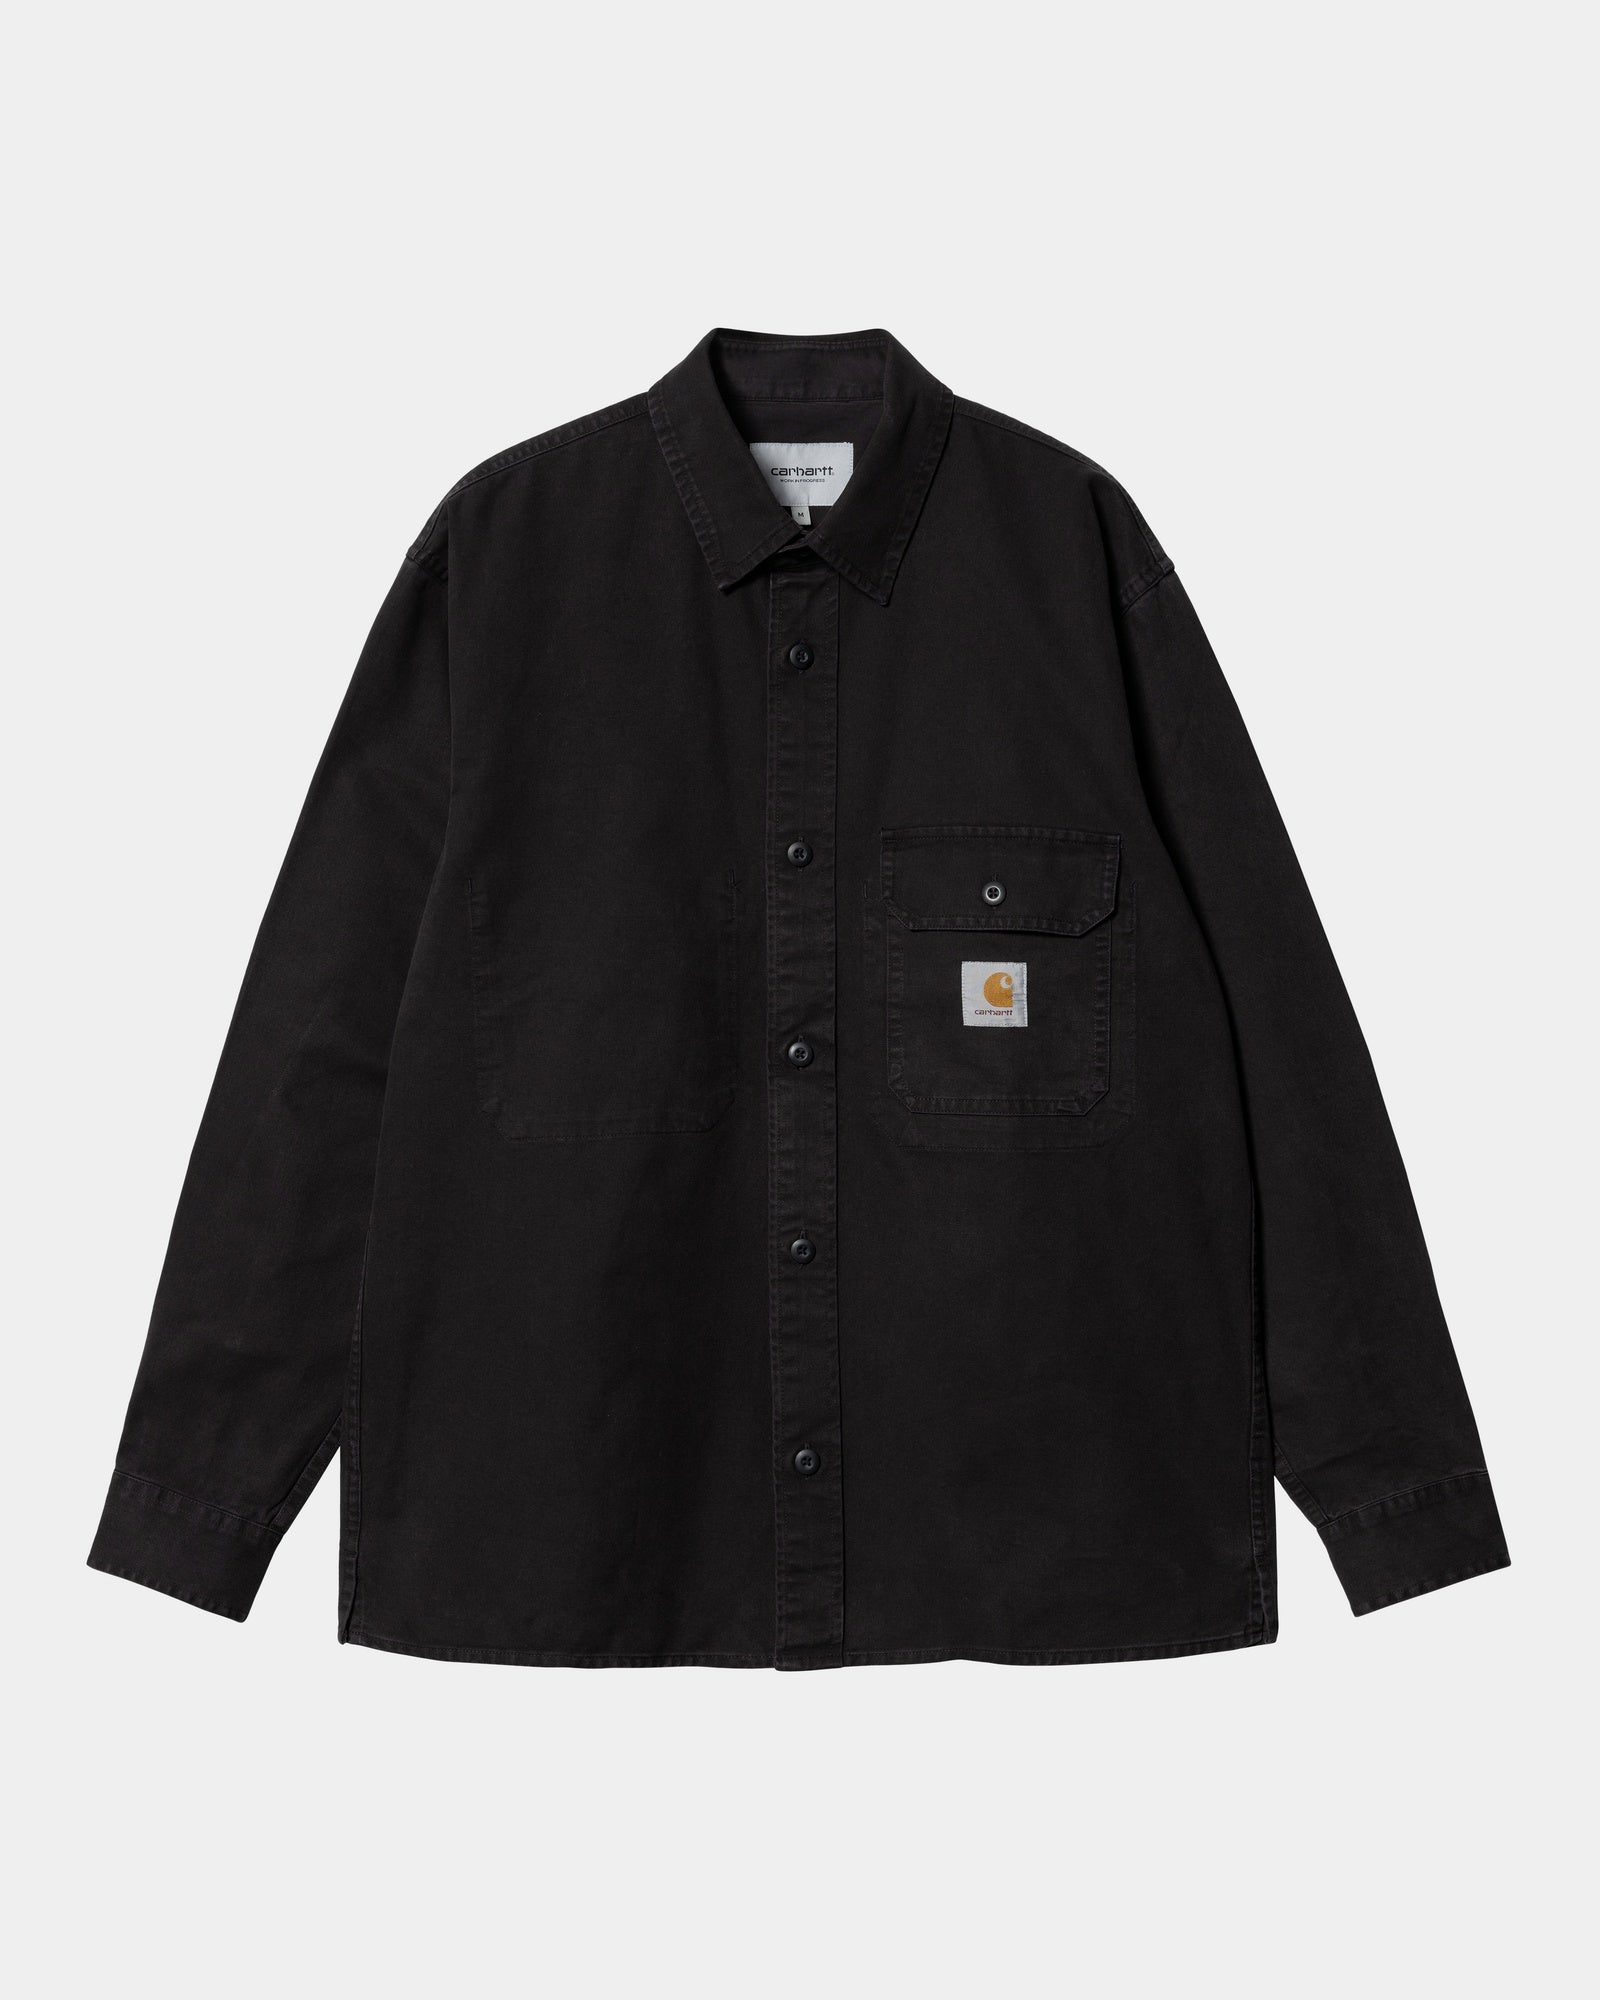 칼하트WIP Carhartt Reno Shirt Jacket,Black garment dyed